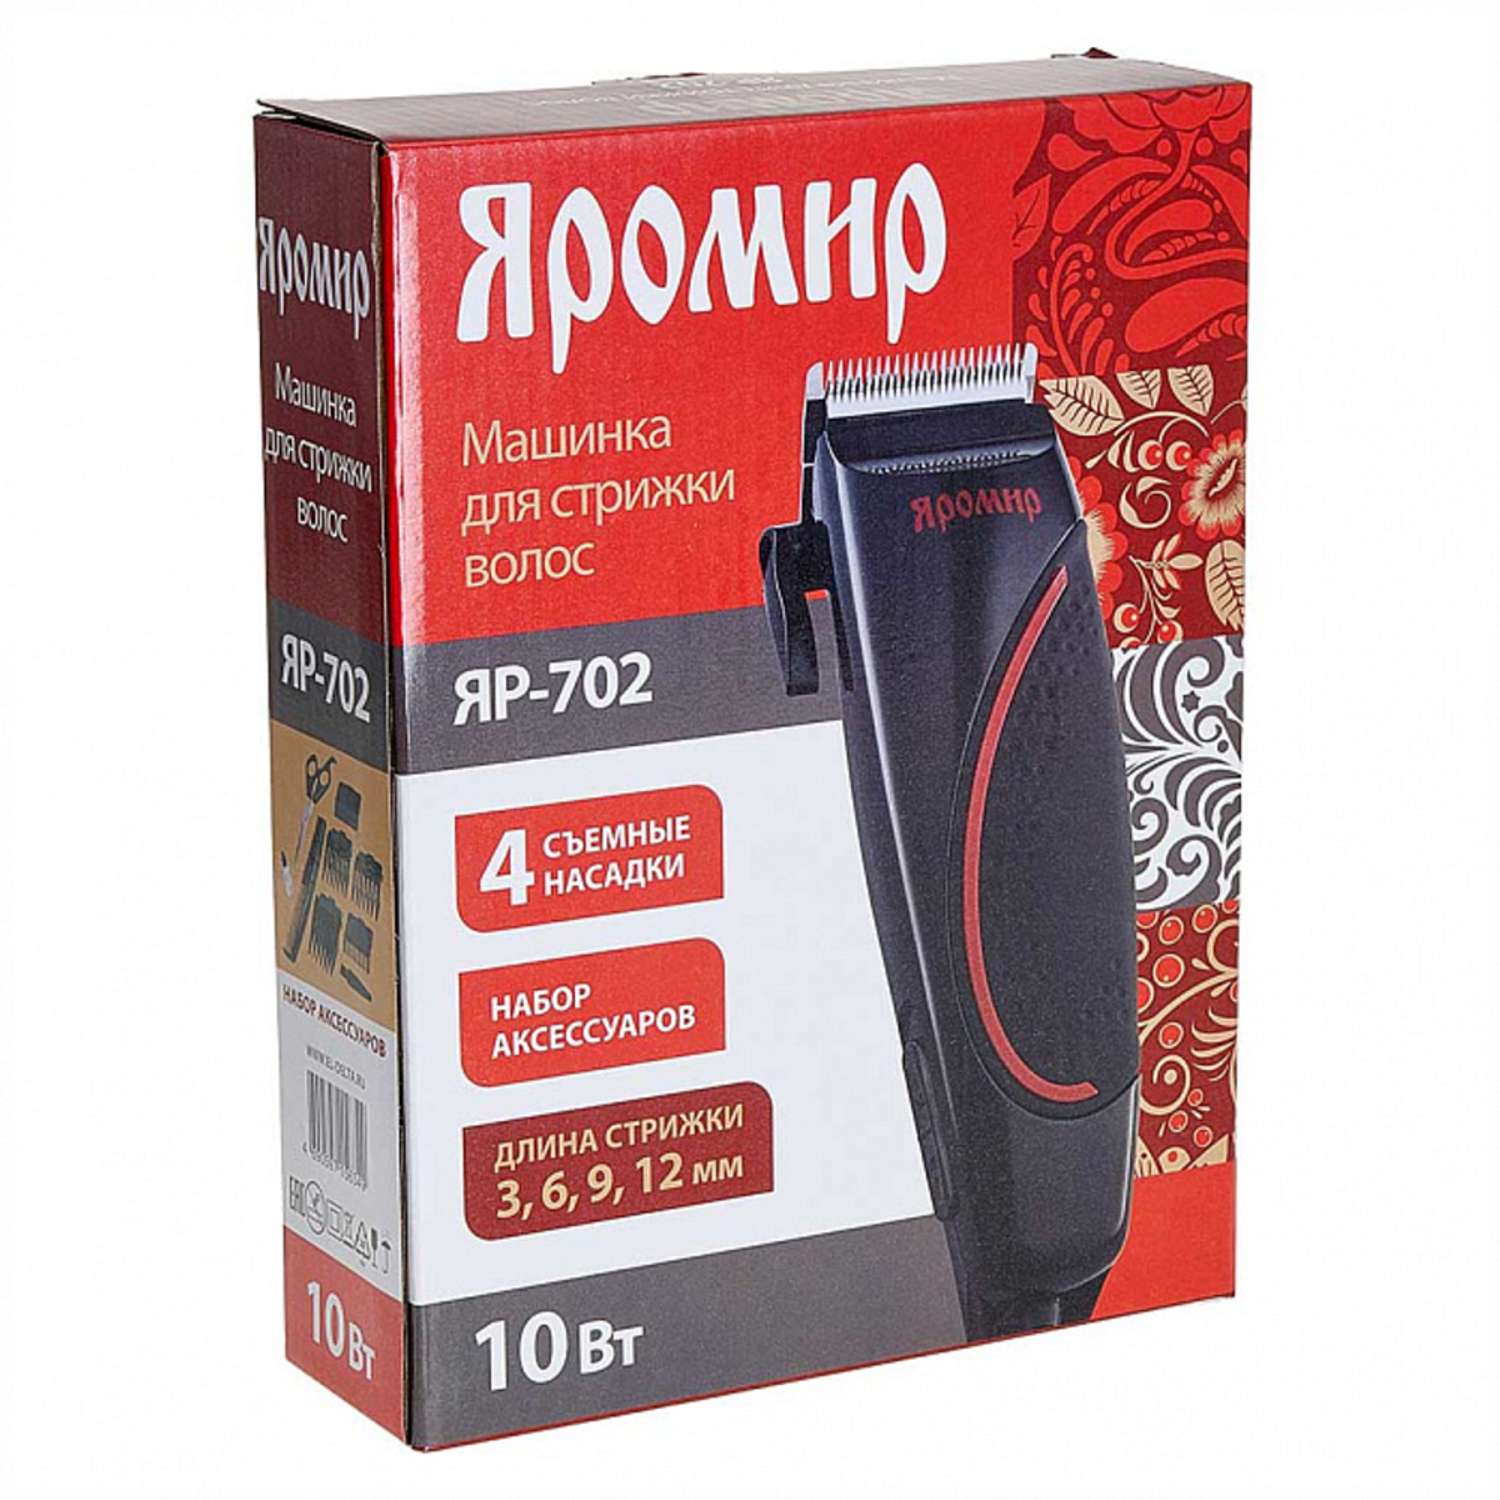 Машинка для стрижки волос Яромир ЯР-702 черный с красным 10Вт 4 съемных гребня - фото 3